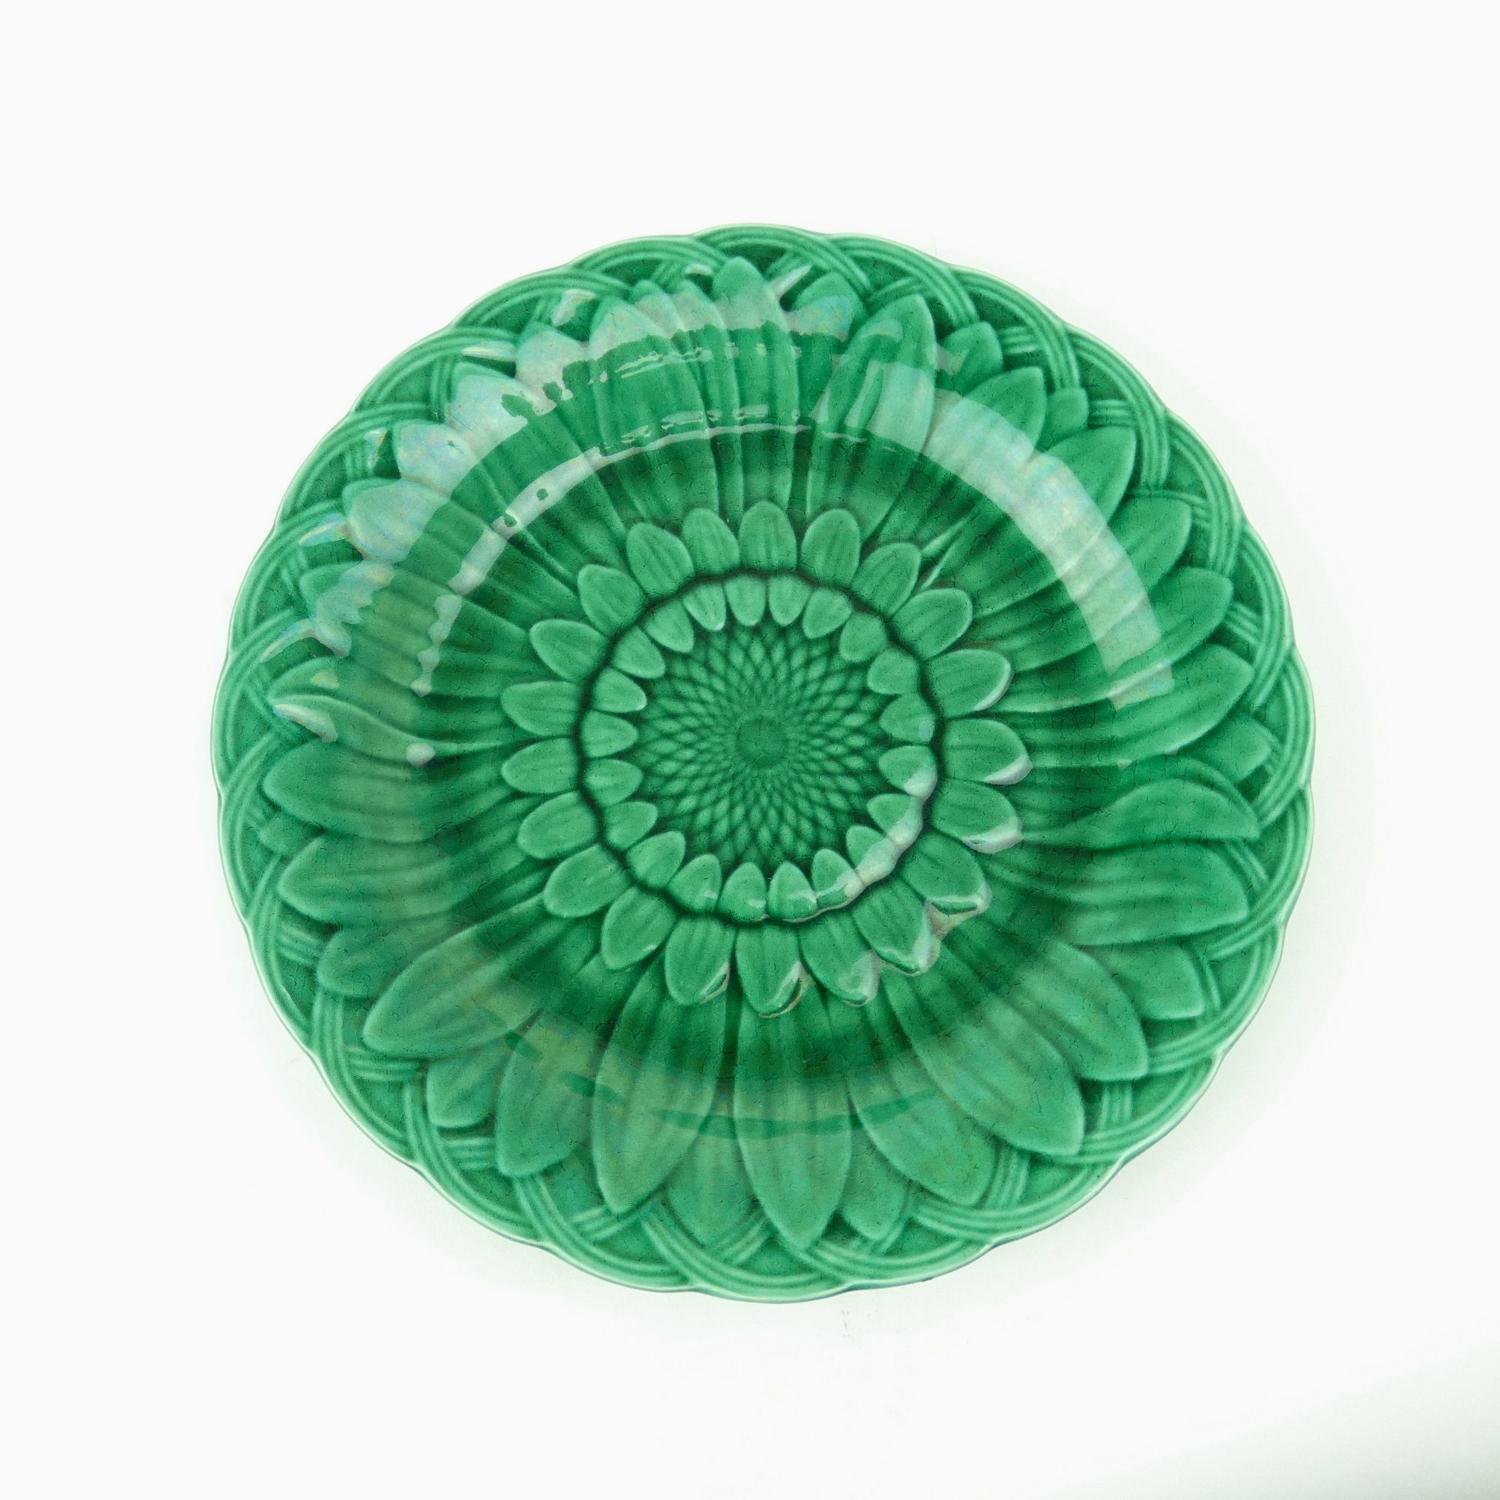 Green sunflower plate